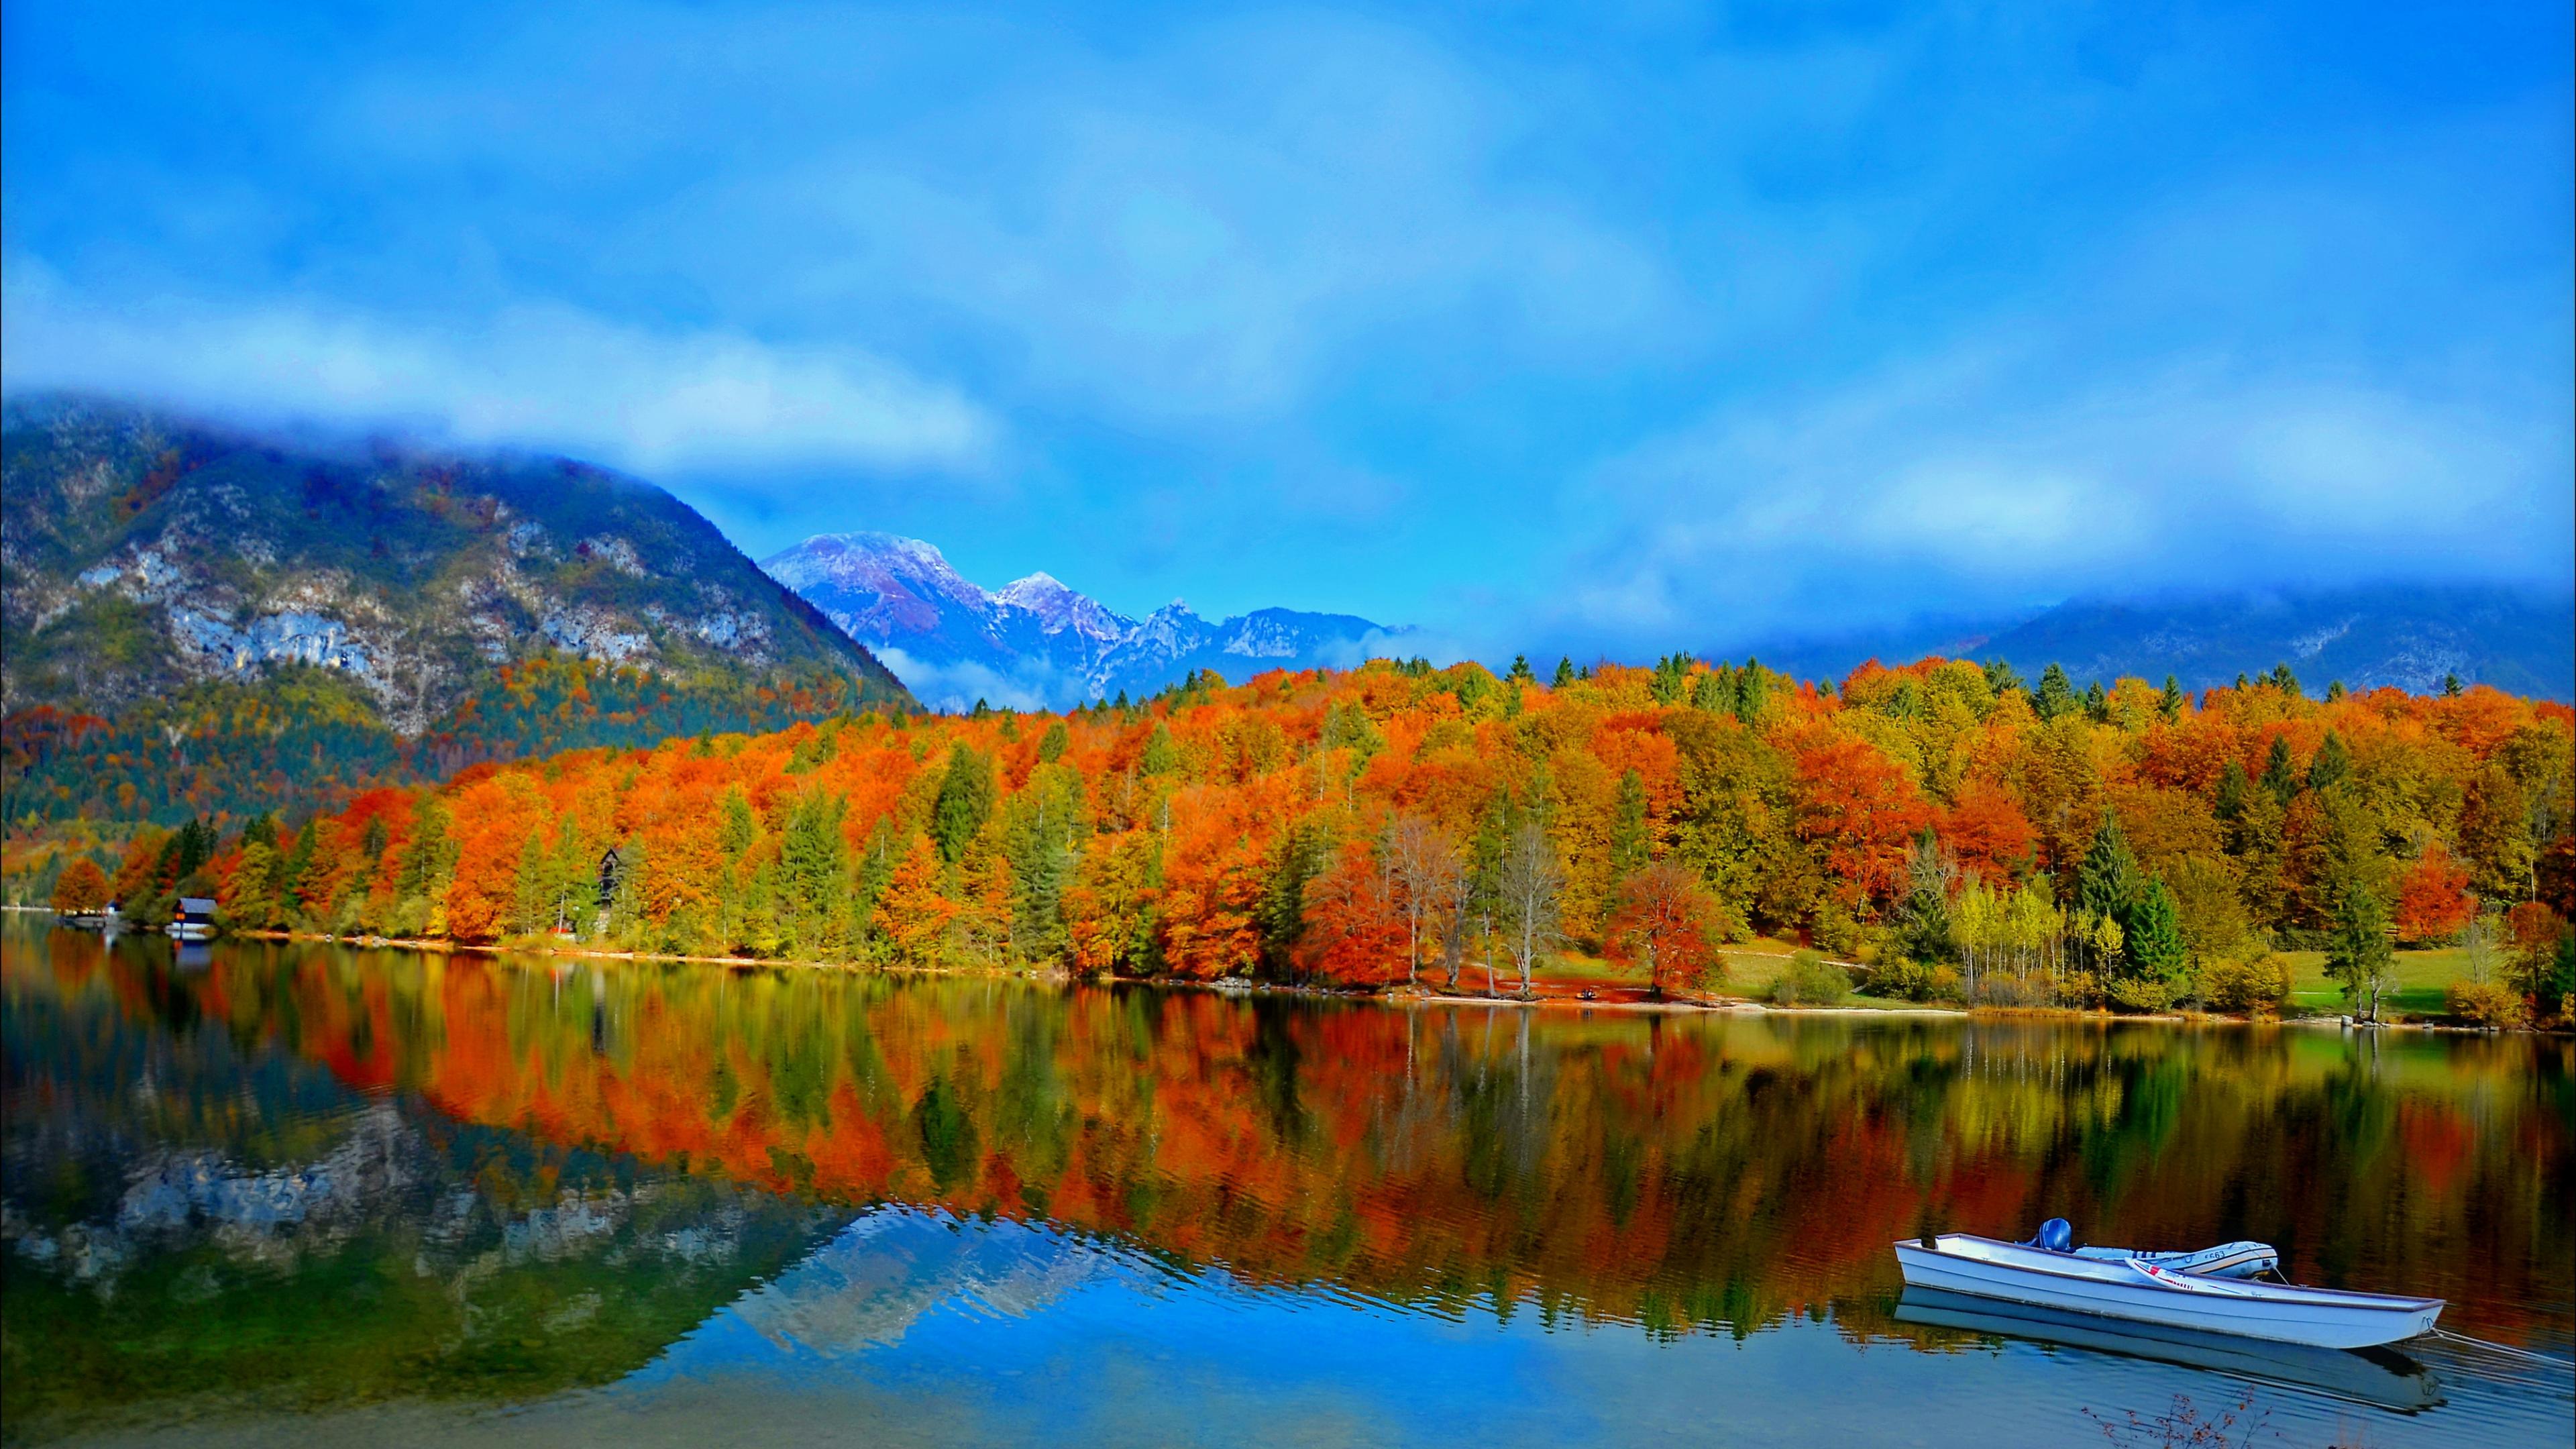 Скачать картинку Осень, Облака, Гора, Озеро, Отражение, Лес, Дерево, Земля, Лодка, Фотографии в телефон бесплатно.